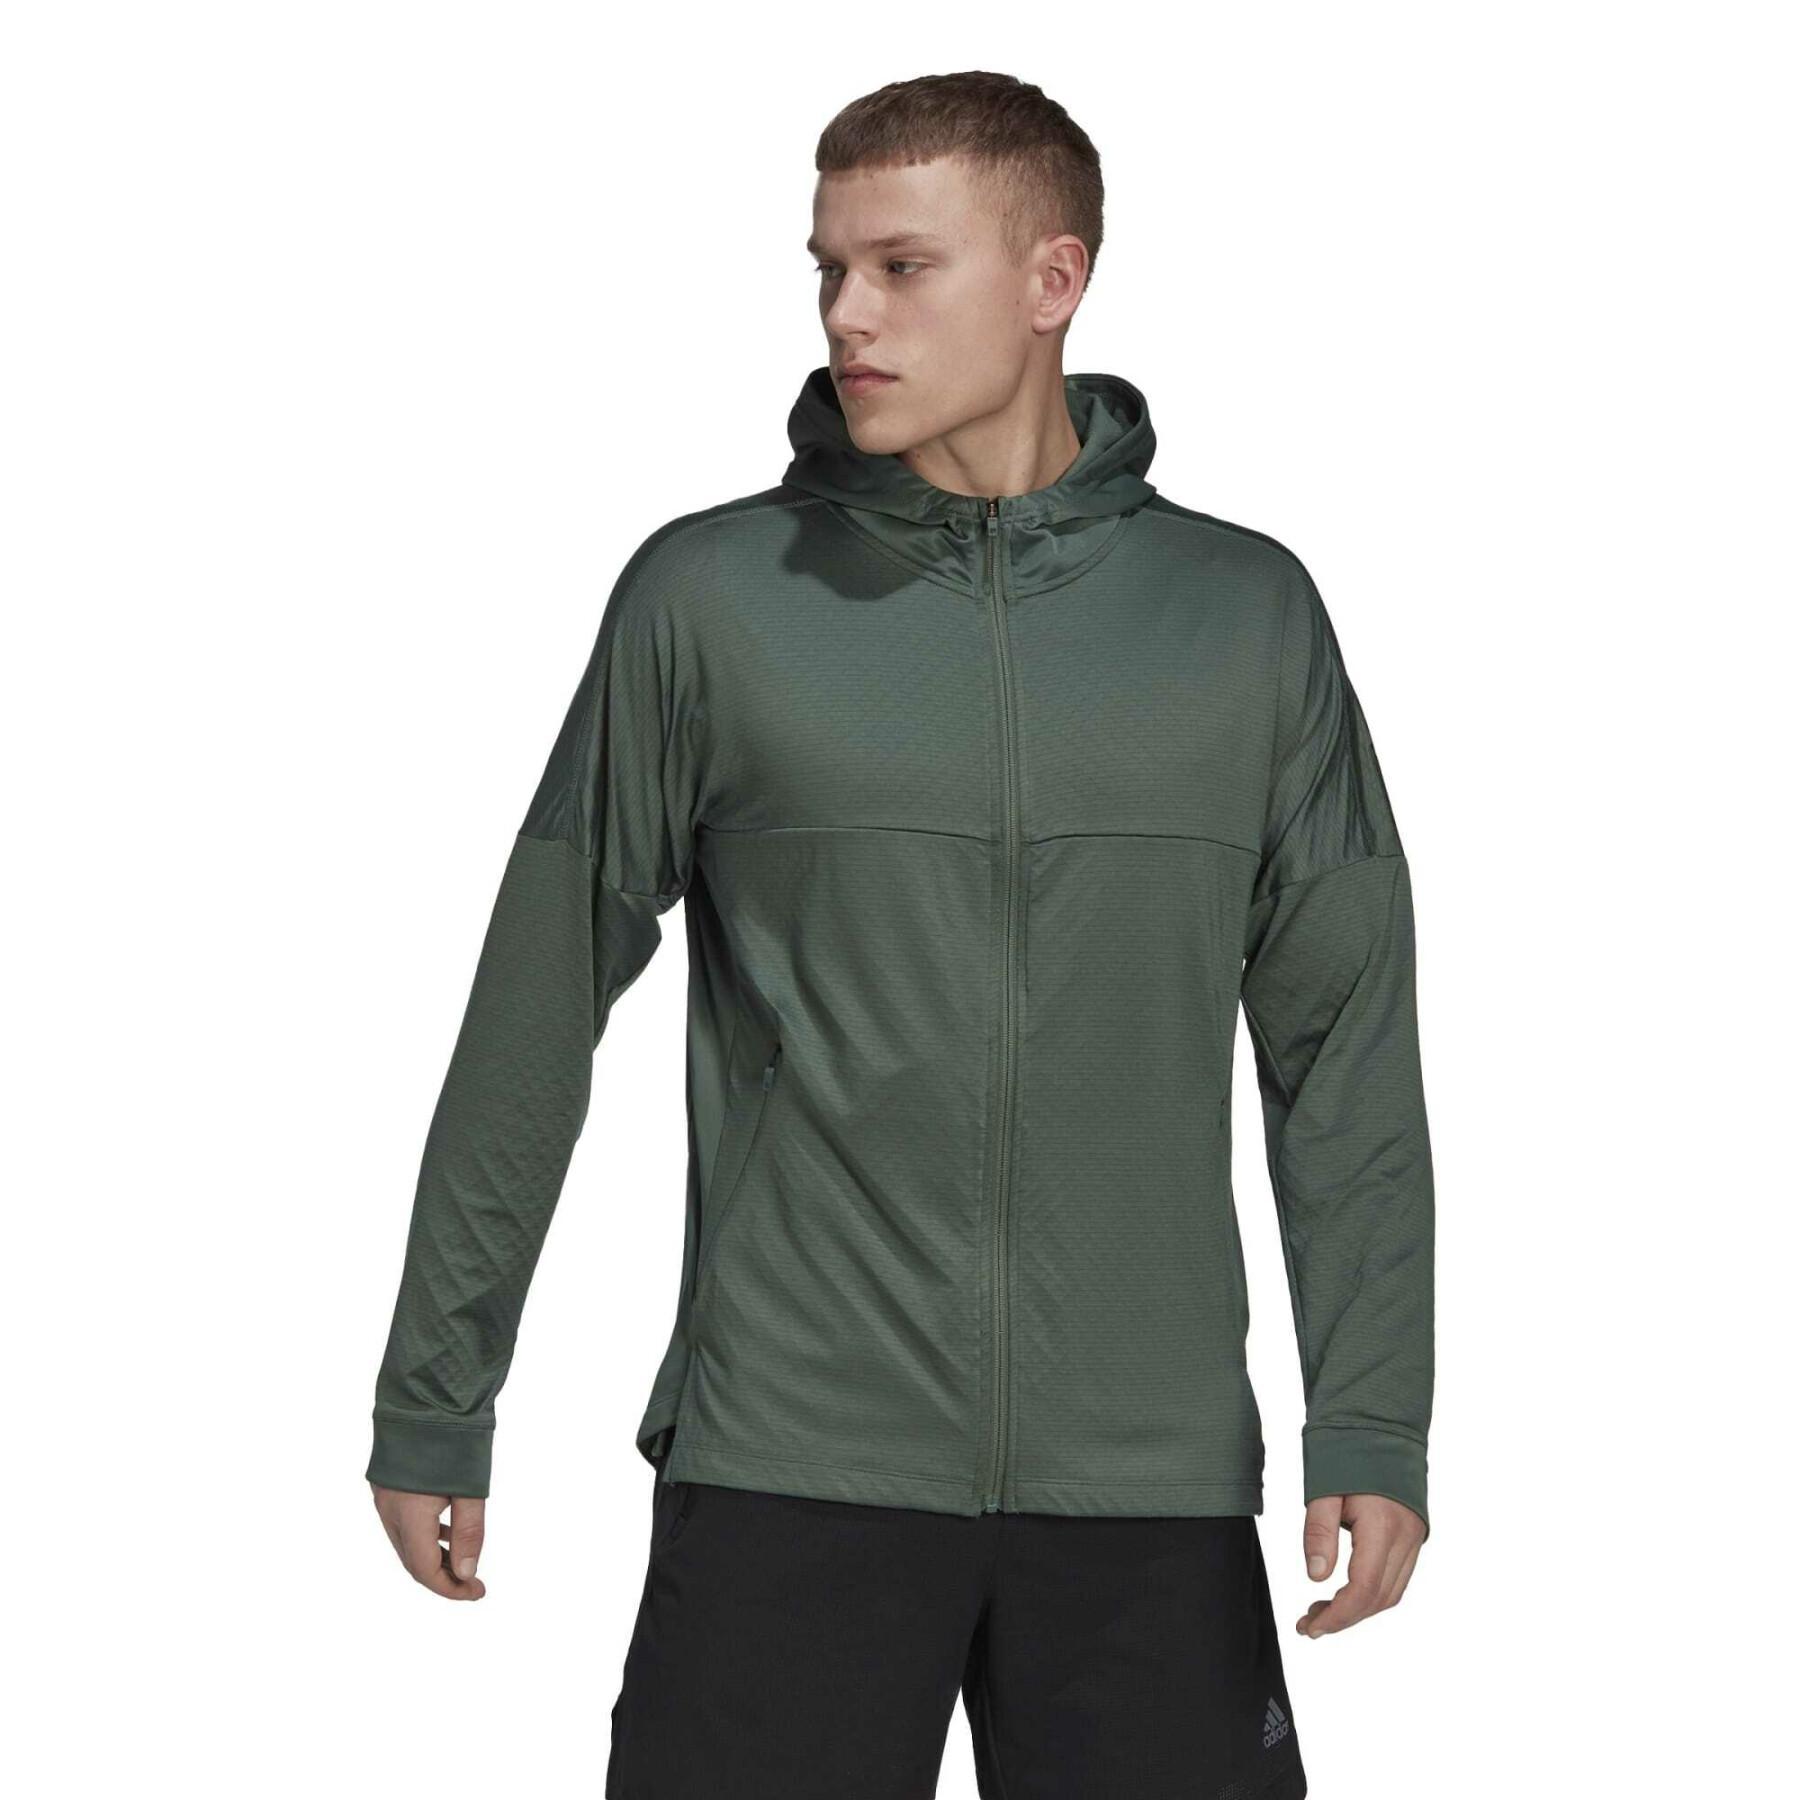 Warm, full-zip hooded training sweatshirt adidas